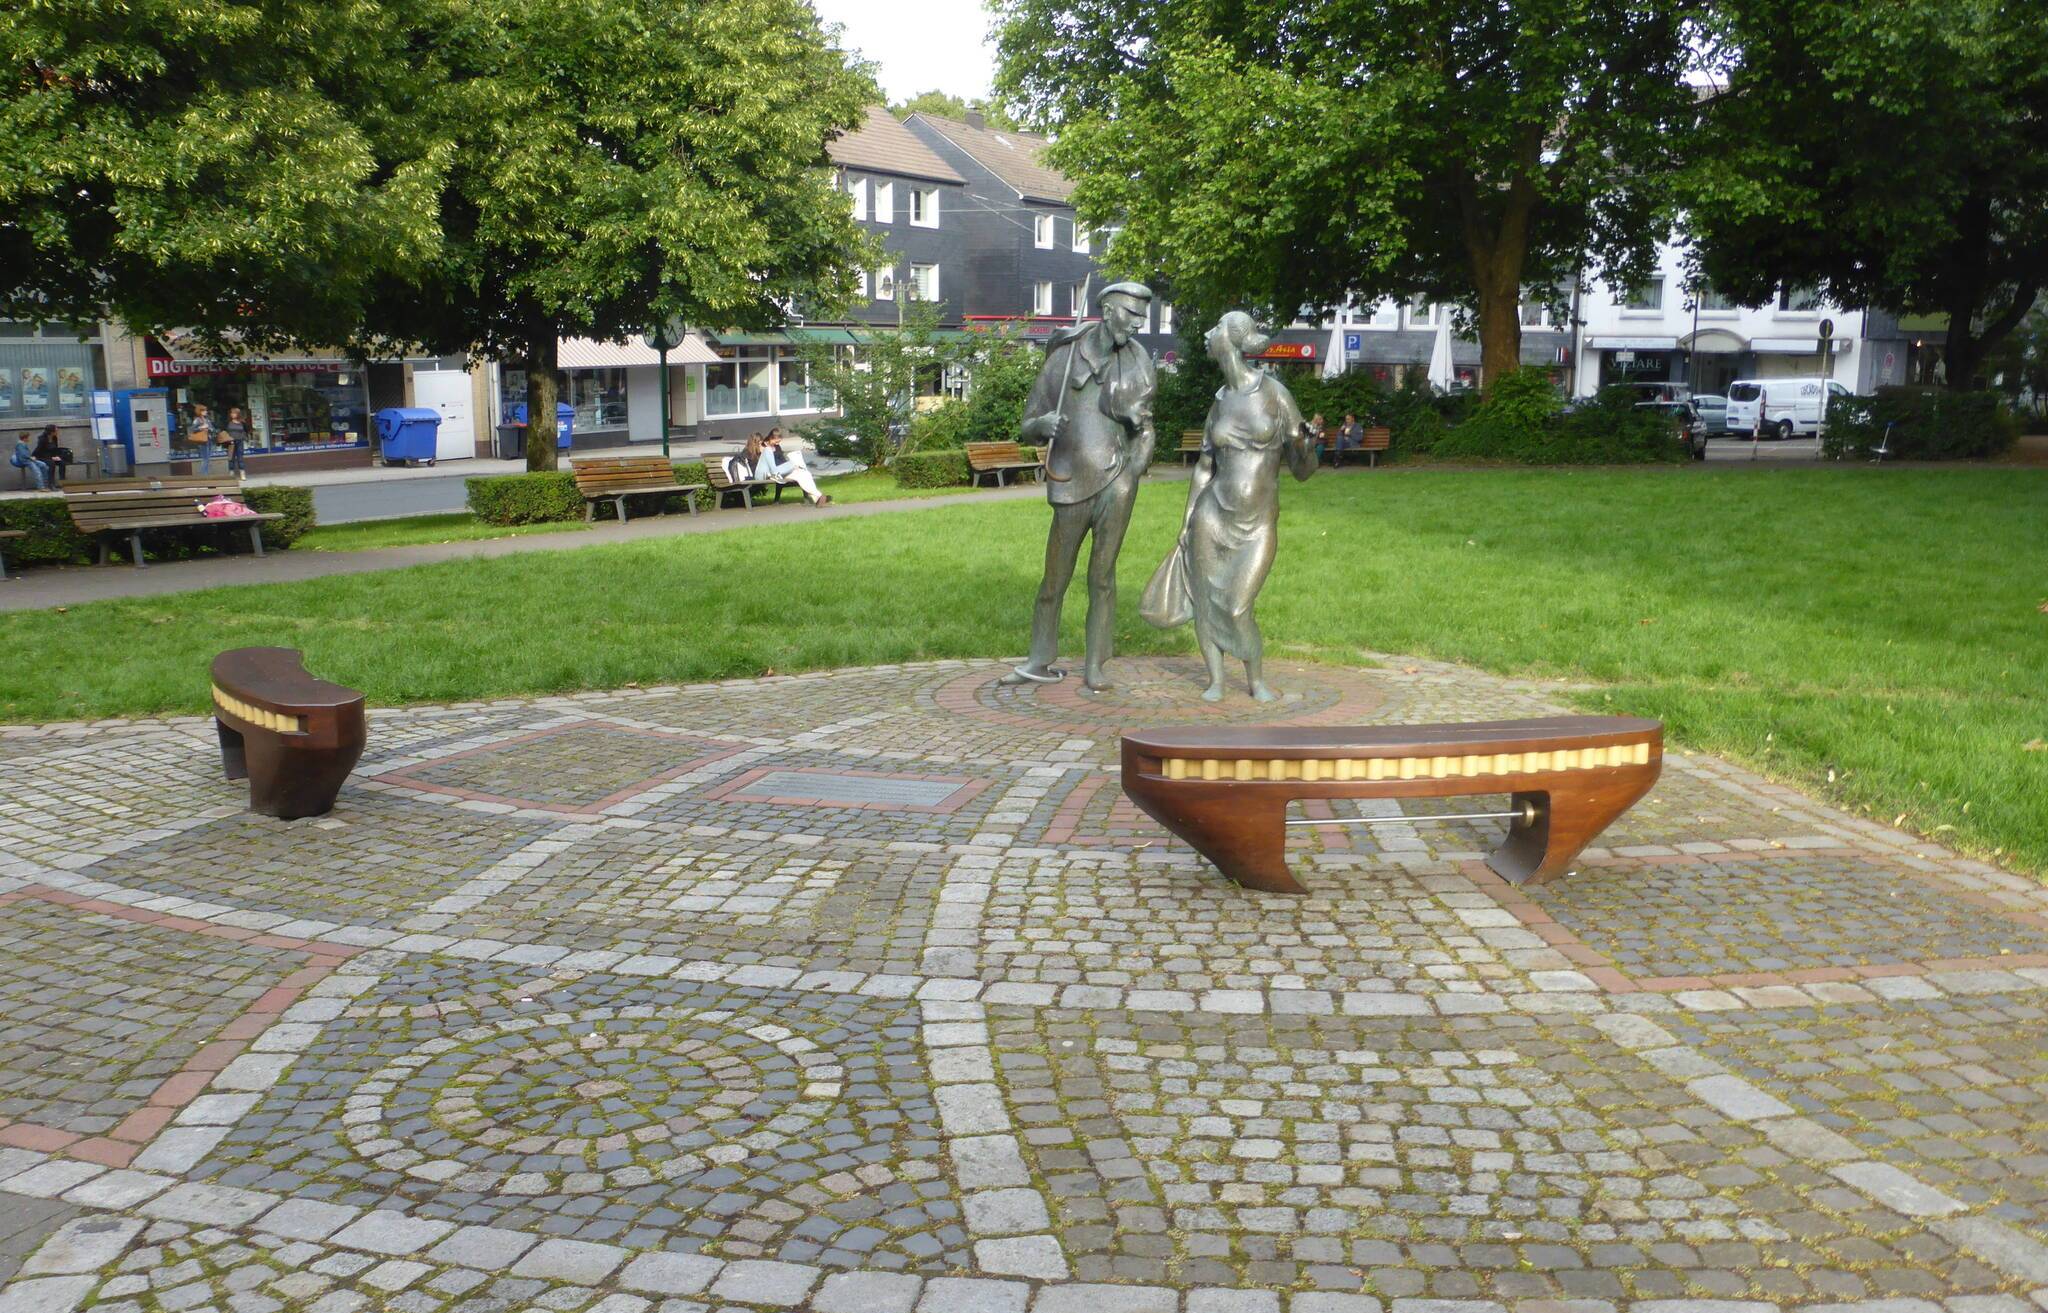  Der Bandwirker Platz in Ronsdorf.  